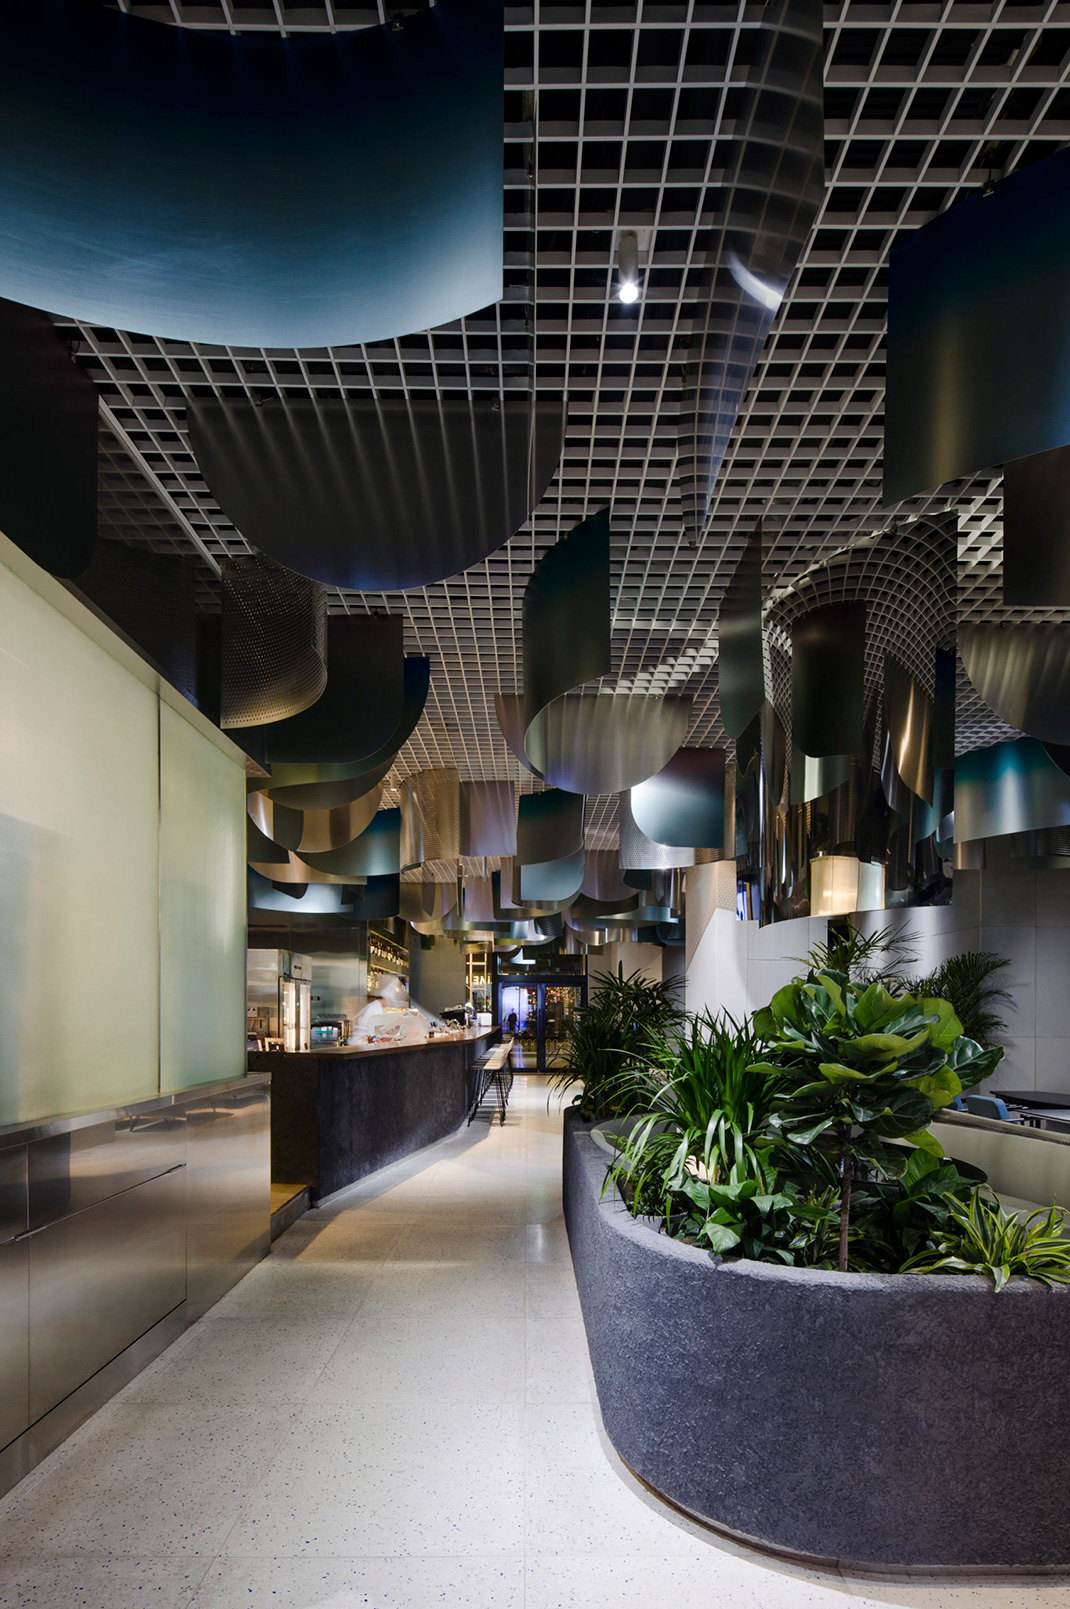 一家新餐厅和鸡尾酒吧 沈阳 酒吧 不锈钢 冲孔板 餐厅LOGO VI设计 空间设计 视觉餐饮